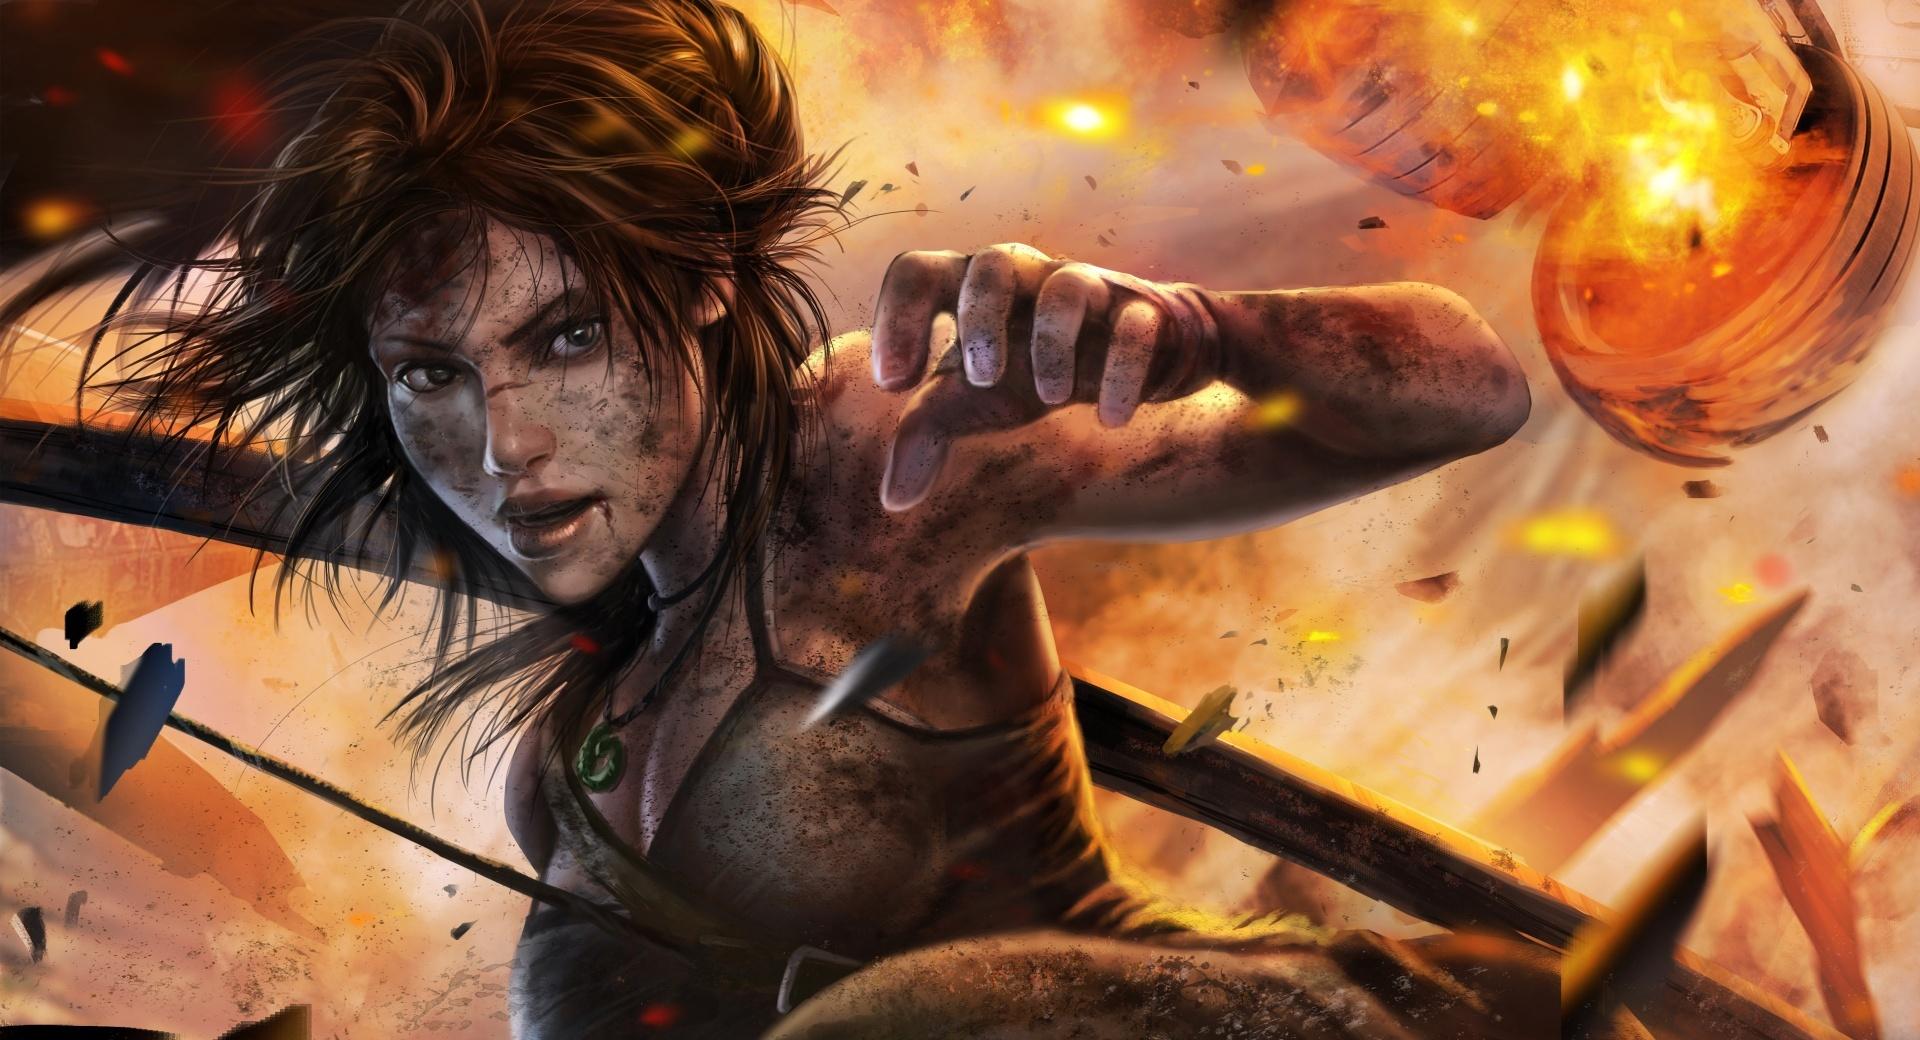 Tomb Raider Lara Croft at 1024 x 1024 iPad size wallpapers HD quality